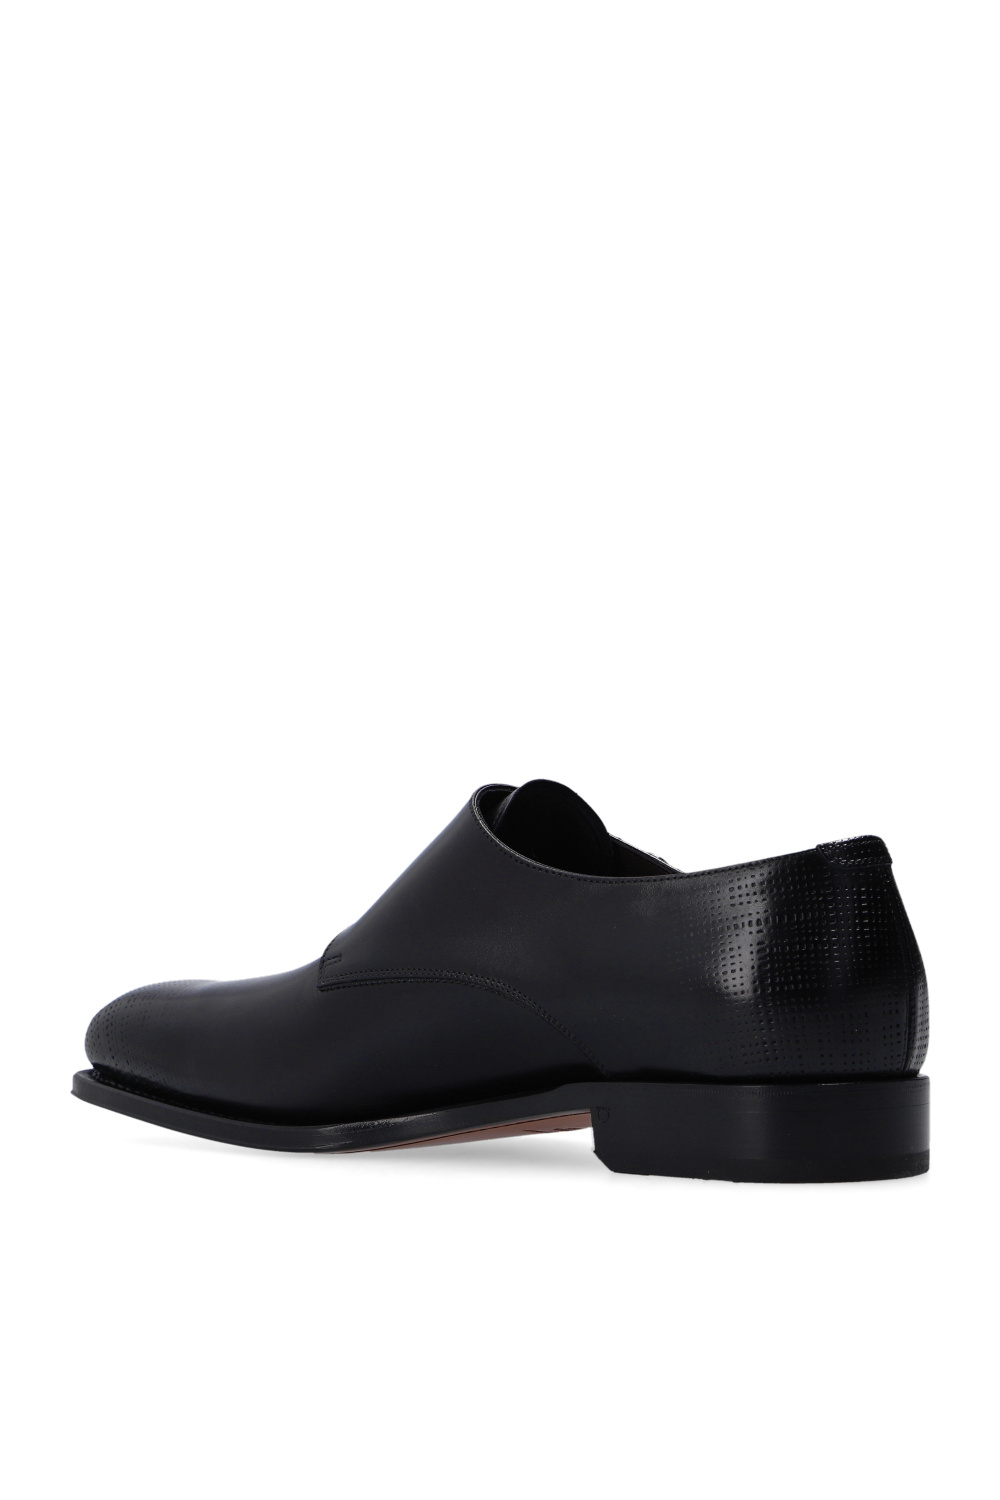 Salvatore Ferragamo ‘Newson’ shoes